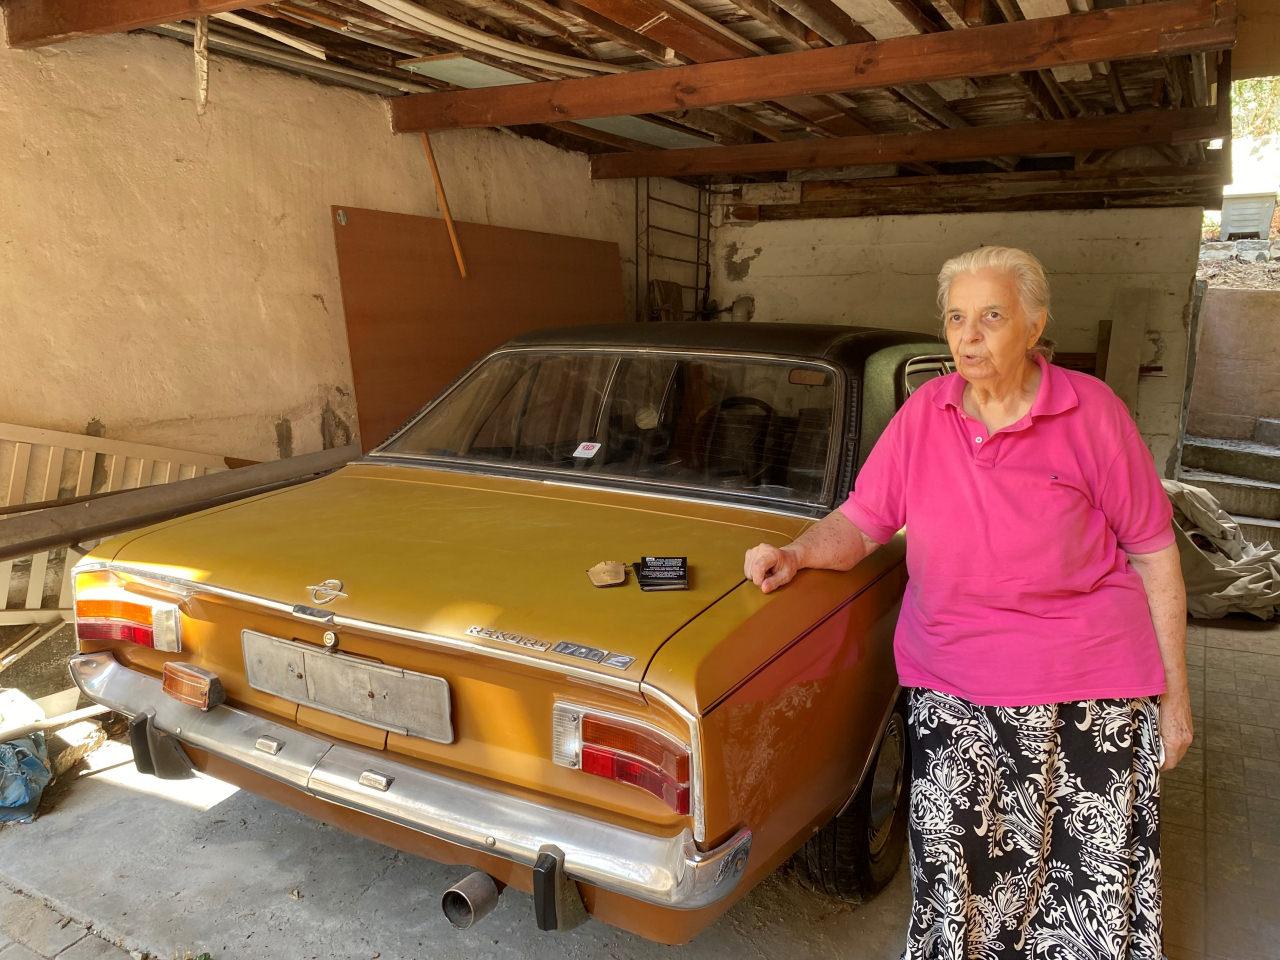 53 yıllık aracı ilk sahibinden orijinal haliyle satın aldı